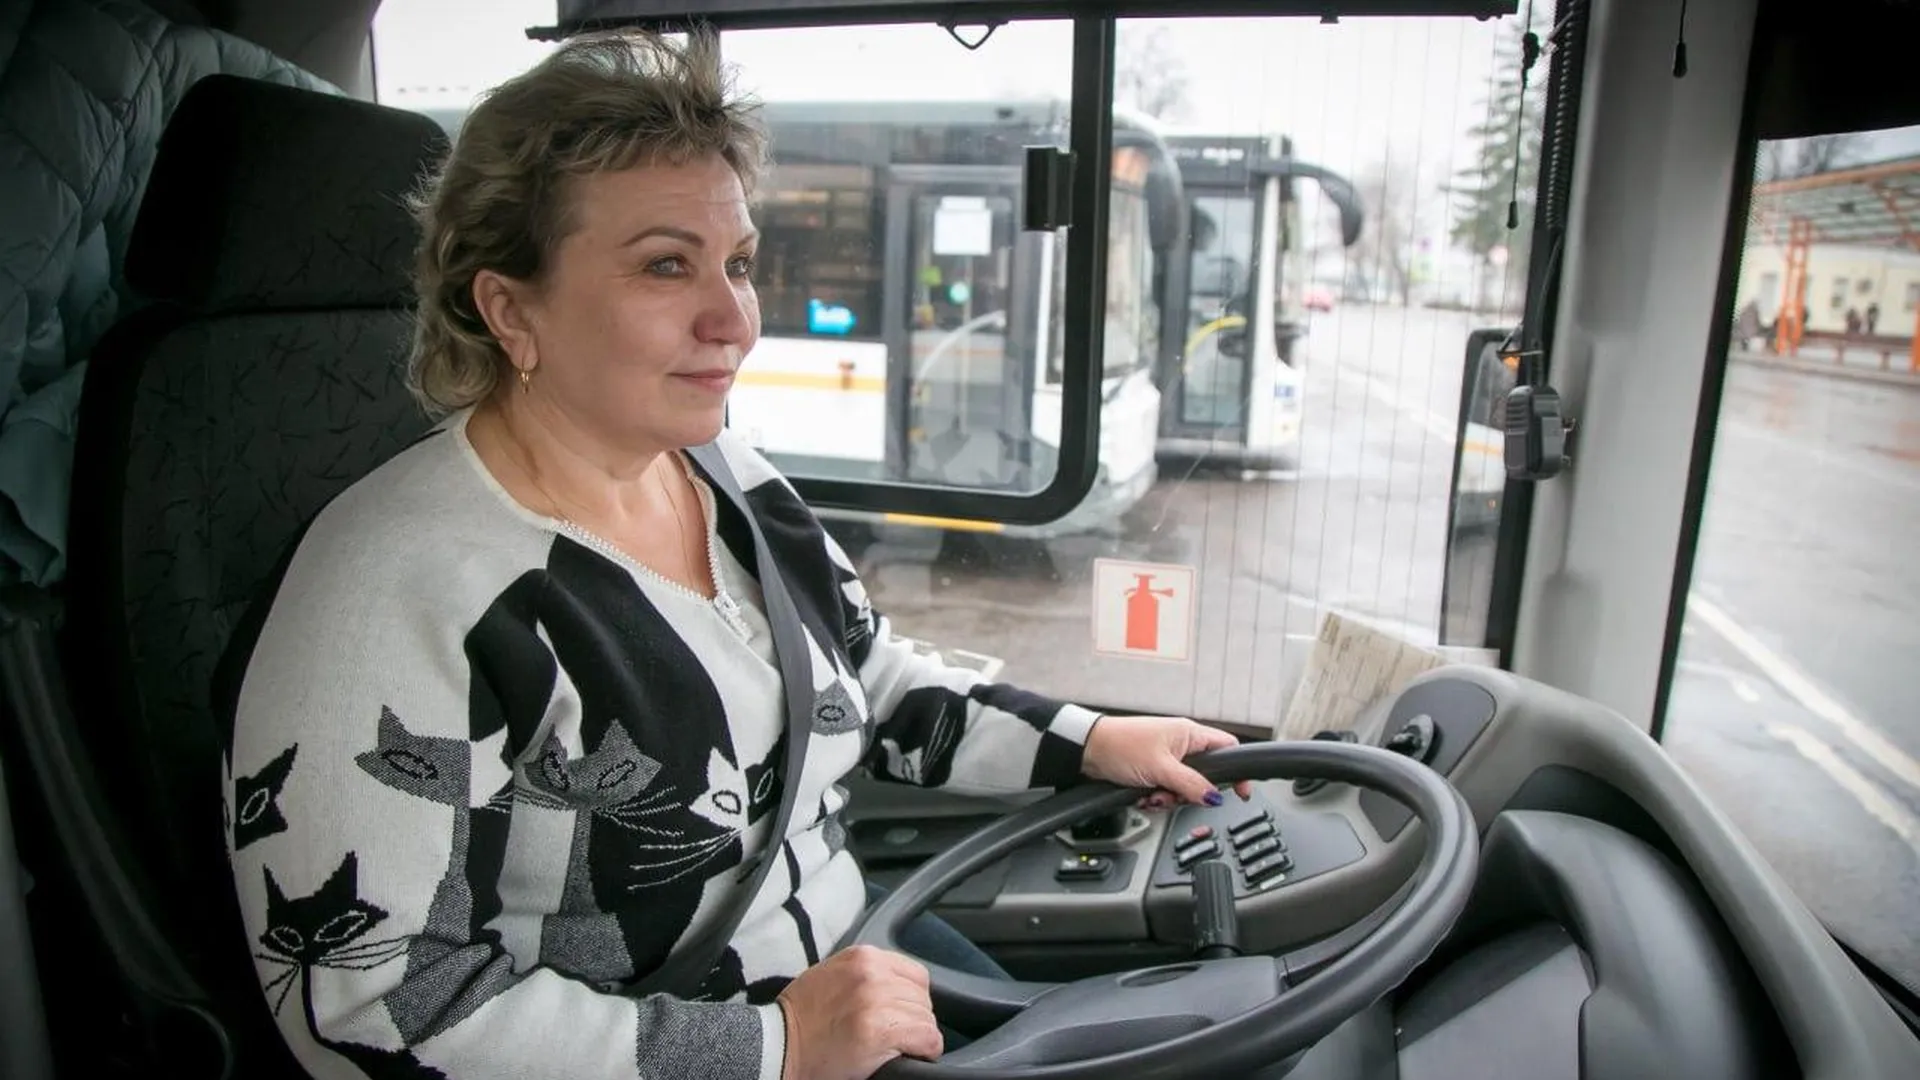 Глава городского округа Коломна встретился с водителем автобуса Надеждой Шашковой